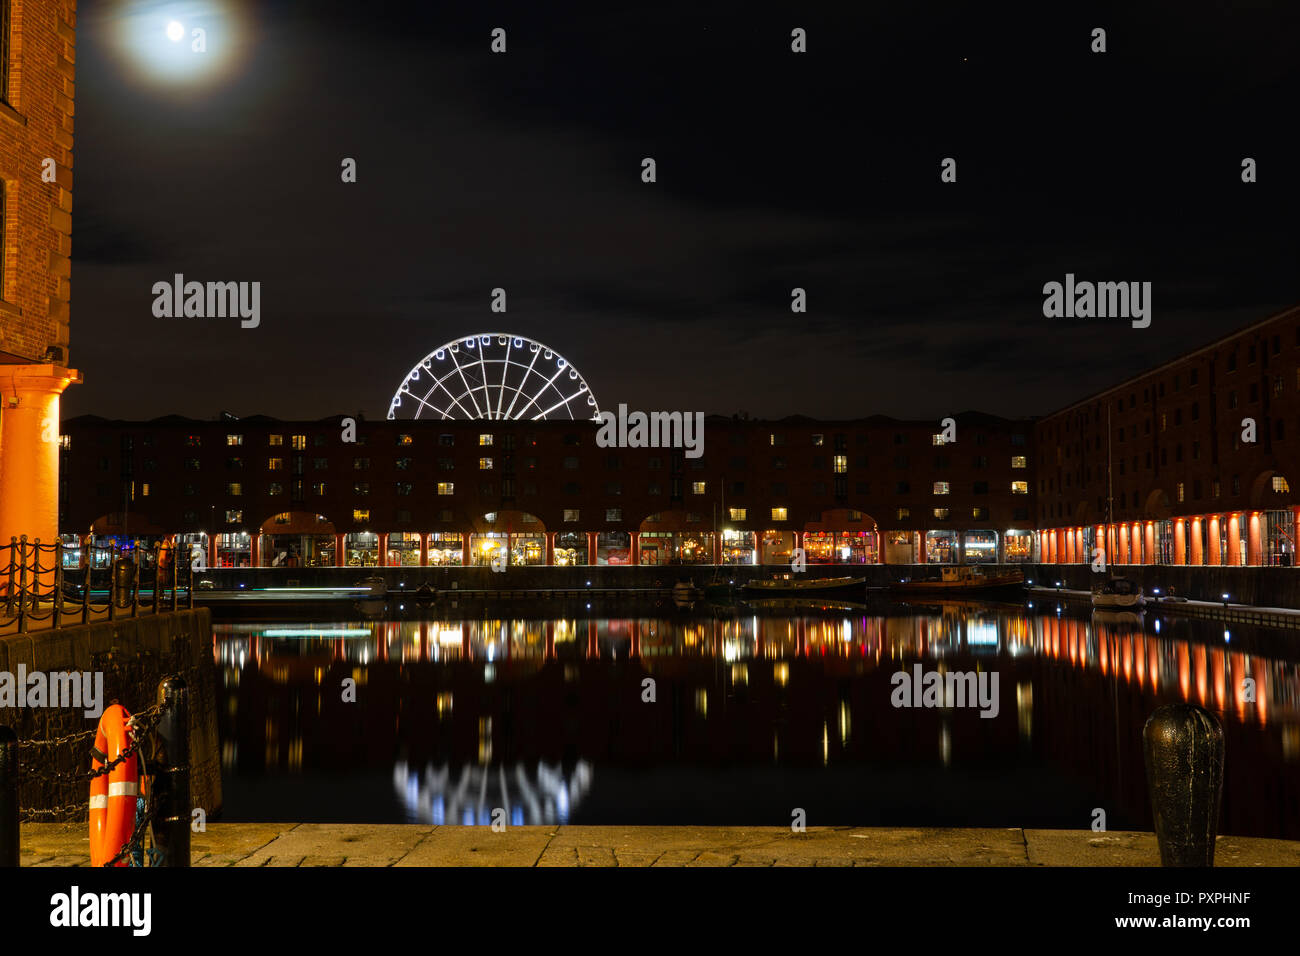 La luna che sorge su Albert Dock, Liverpool, ruota panoramica Ferris in background. Immagine presa in ottobre 2018. Foto Stock